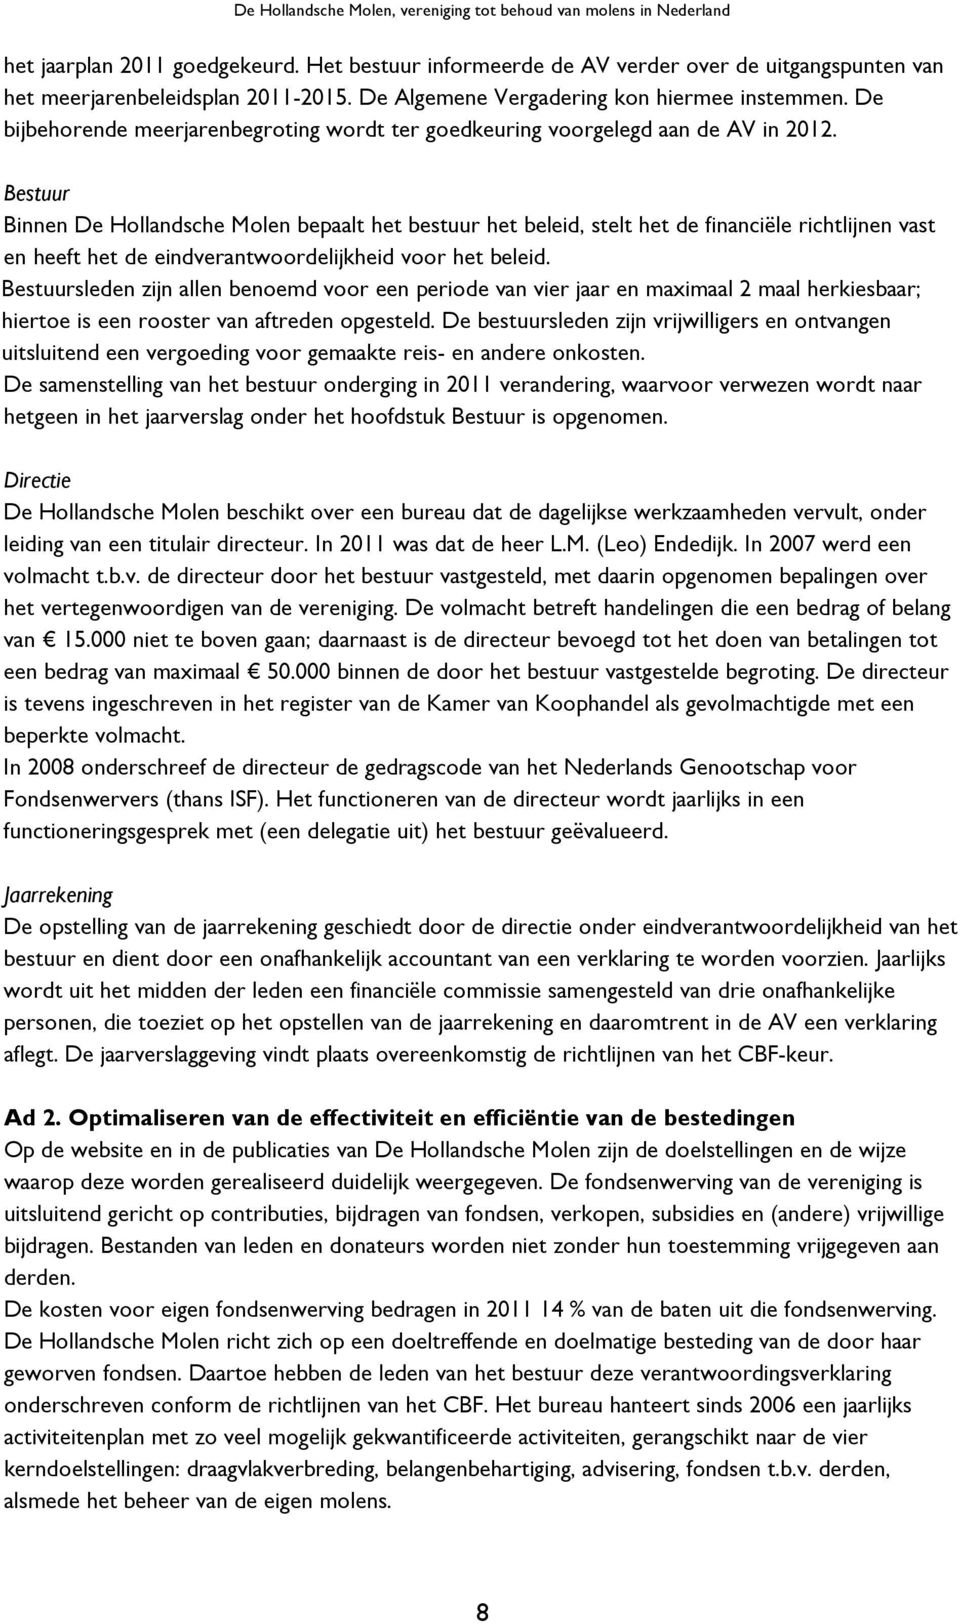 Bestuur Binnen De Hollandsche Molen bepaalt het bestuur het beleid, stelt het de financiële richtlijnen vast en heeft het de eindverantwoordelijkheid voor het beleid.